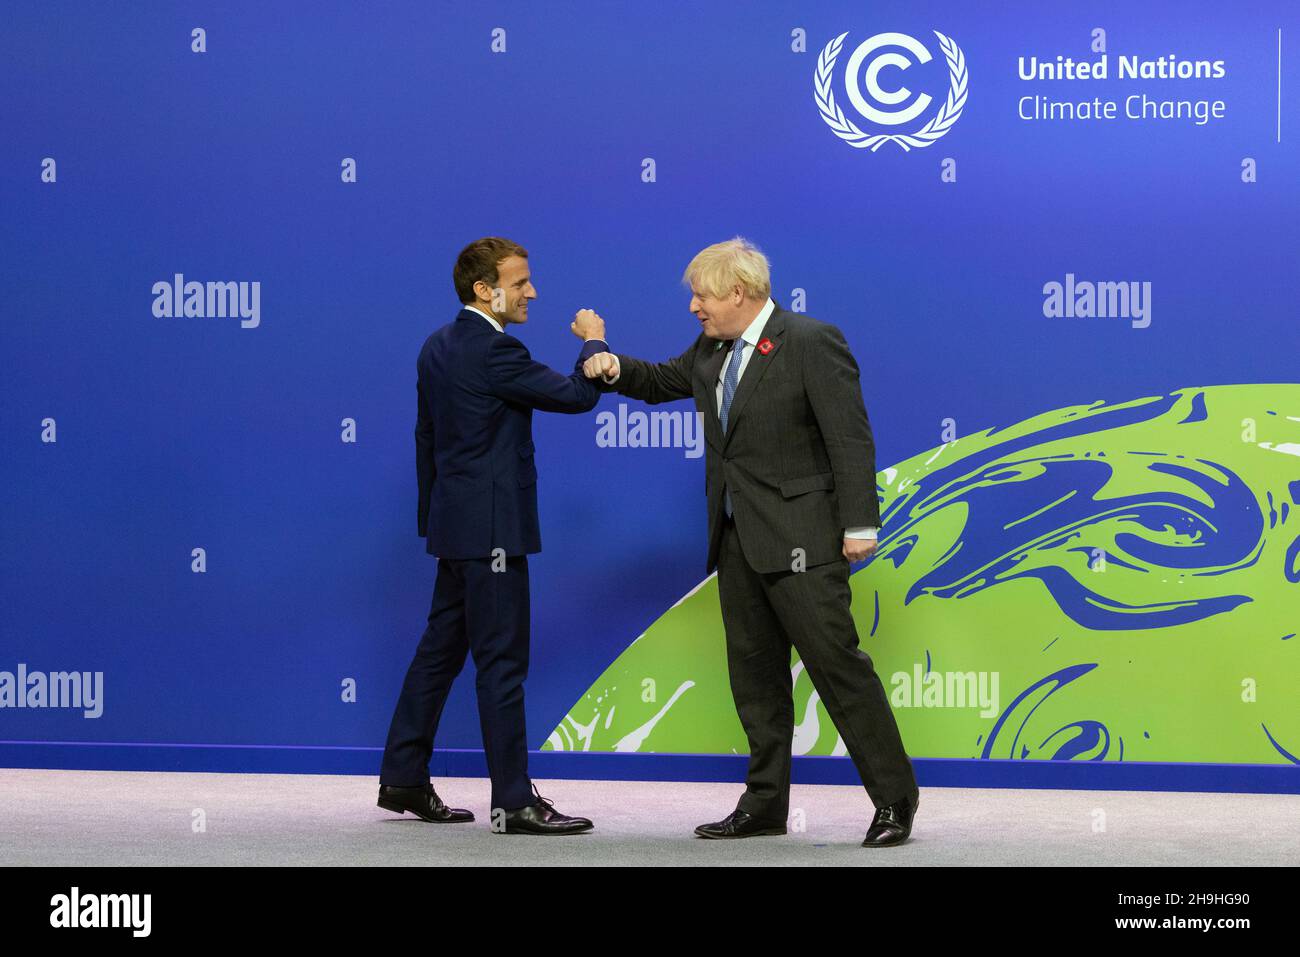 GLASGOW, SCOZIA, Regno Unito - 01 novembre 2021 - il primo ministro britannico Boris Johnson dà il benvenuto al presidente francese Emmanuel Macron al vertice delle Nazioni Unite del COP26 - Pho Foto Stock